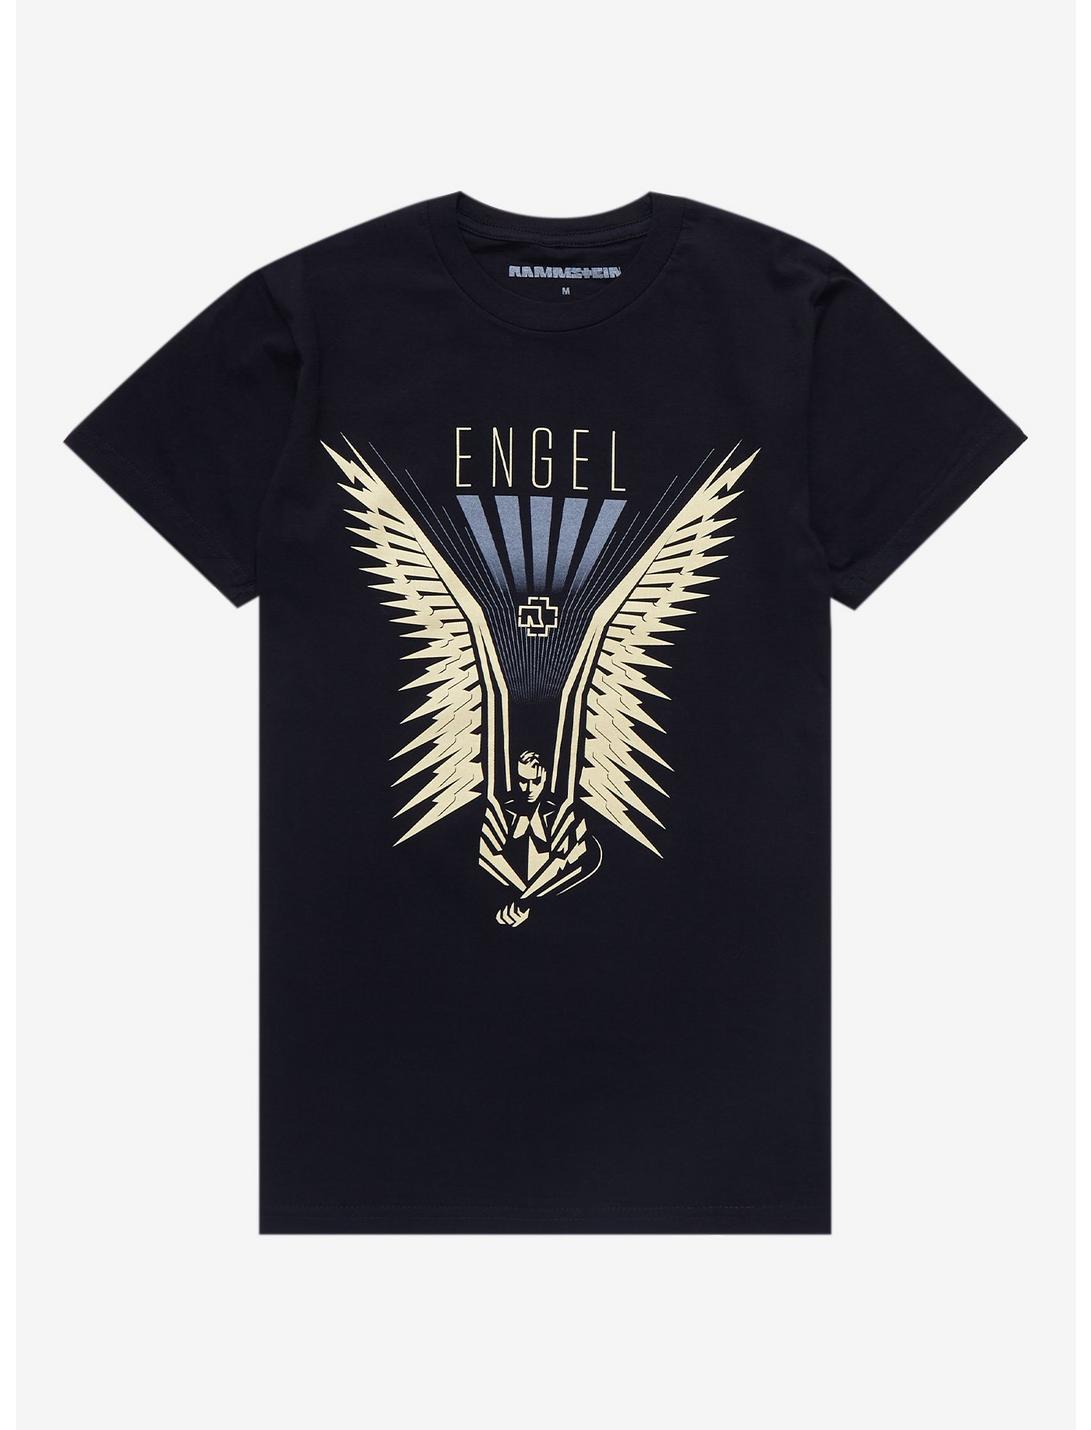 Finde sig i ubetalt G Rammstein Engel Boyfriend Fit Girls T-Shirt | Hot Topic